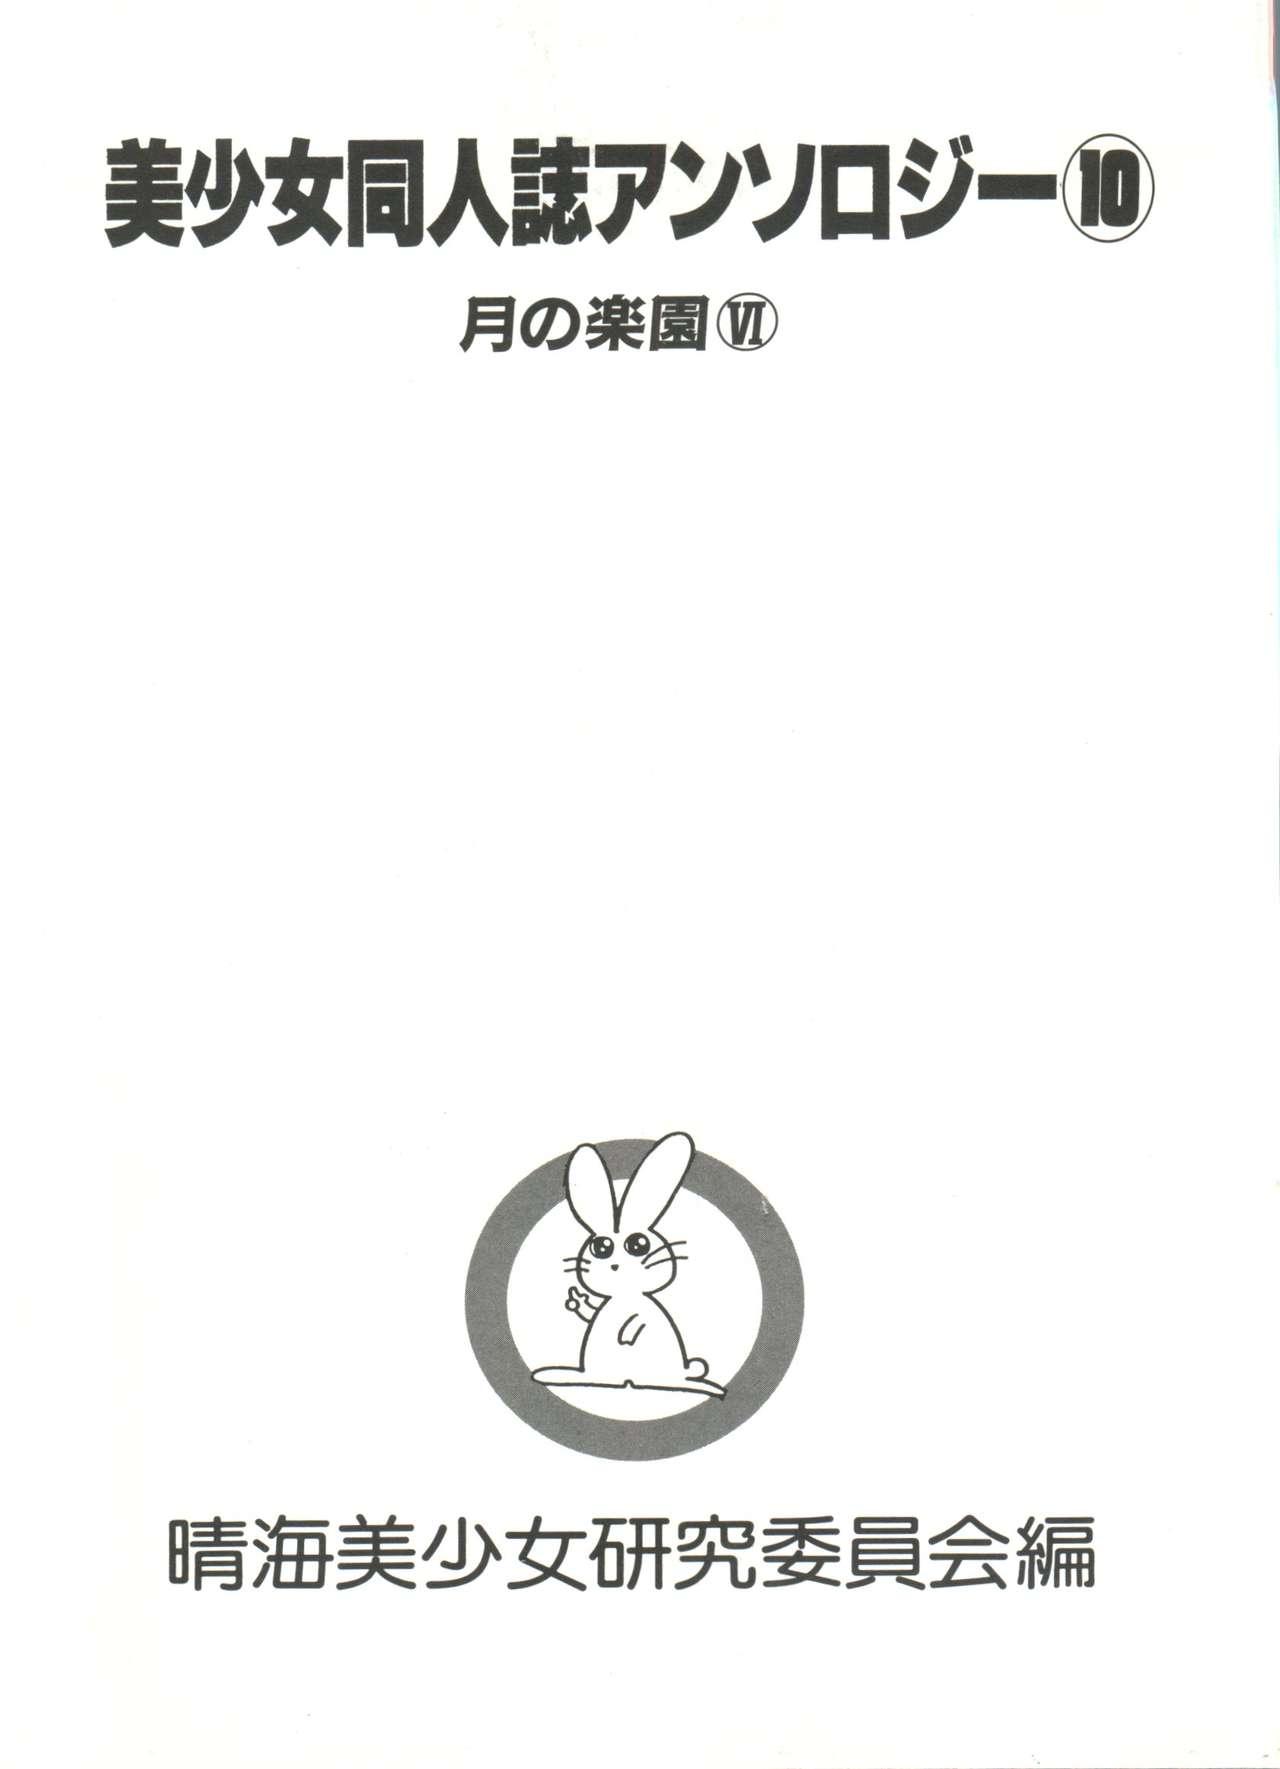 Bishoujo Doujinshi Anthology 10 - Moon Paradise 6 Tsuki no Rakuen 5